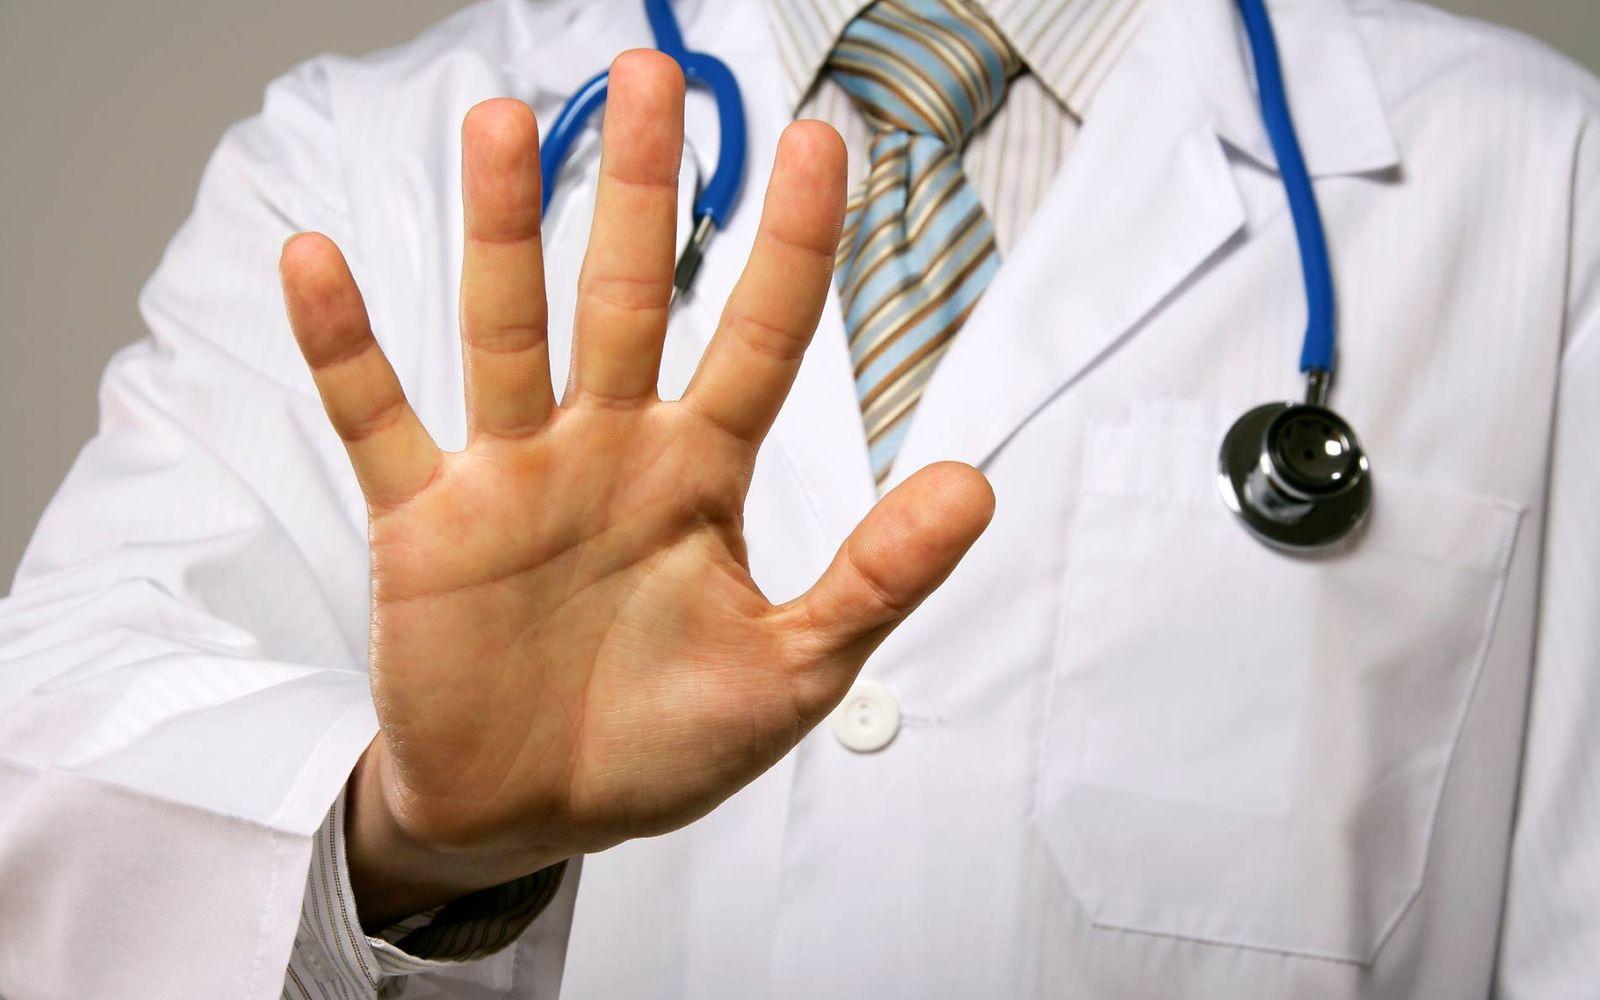 Bild: Arzt der die Hand ausgestreckt hat, um Stopp zu sagen